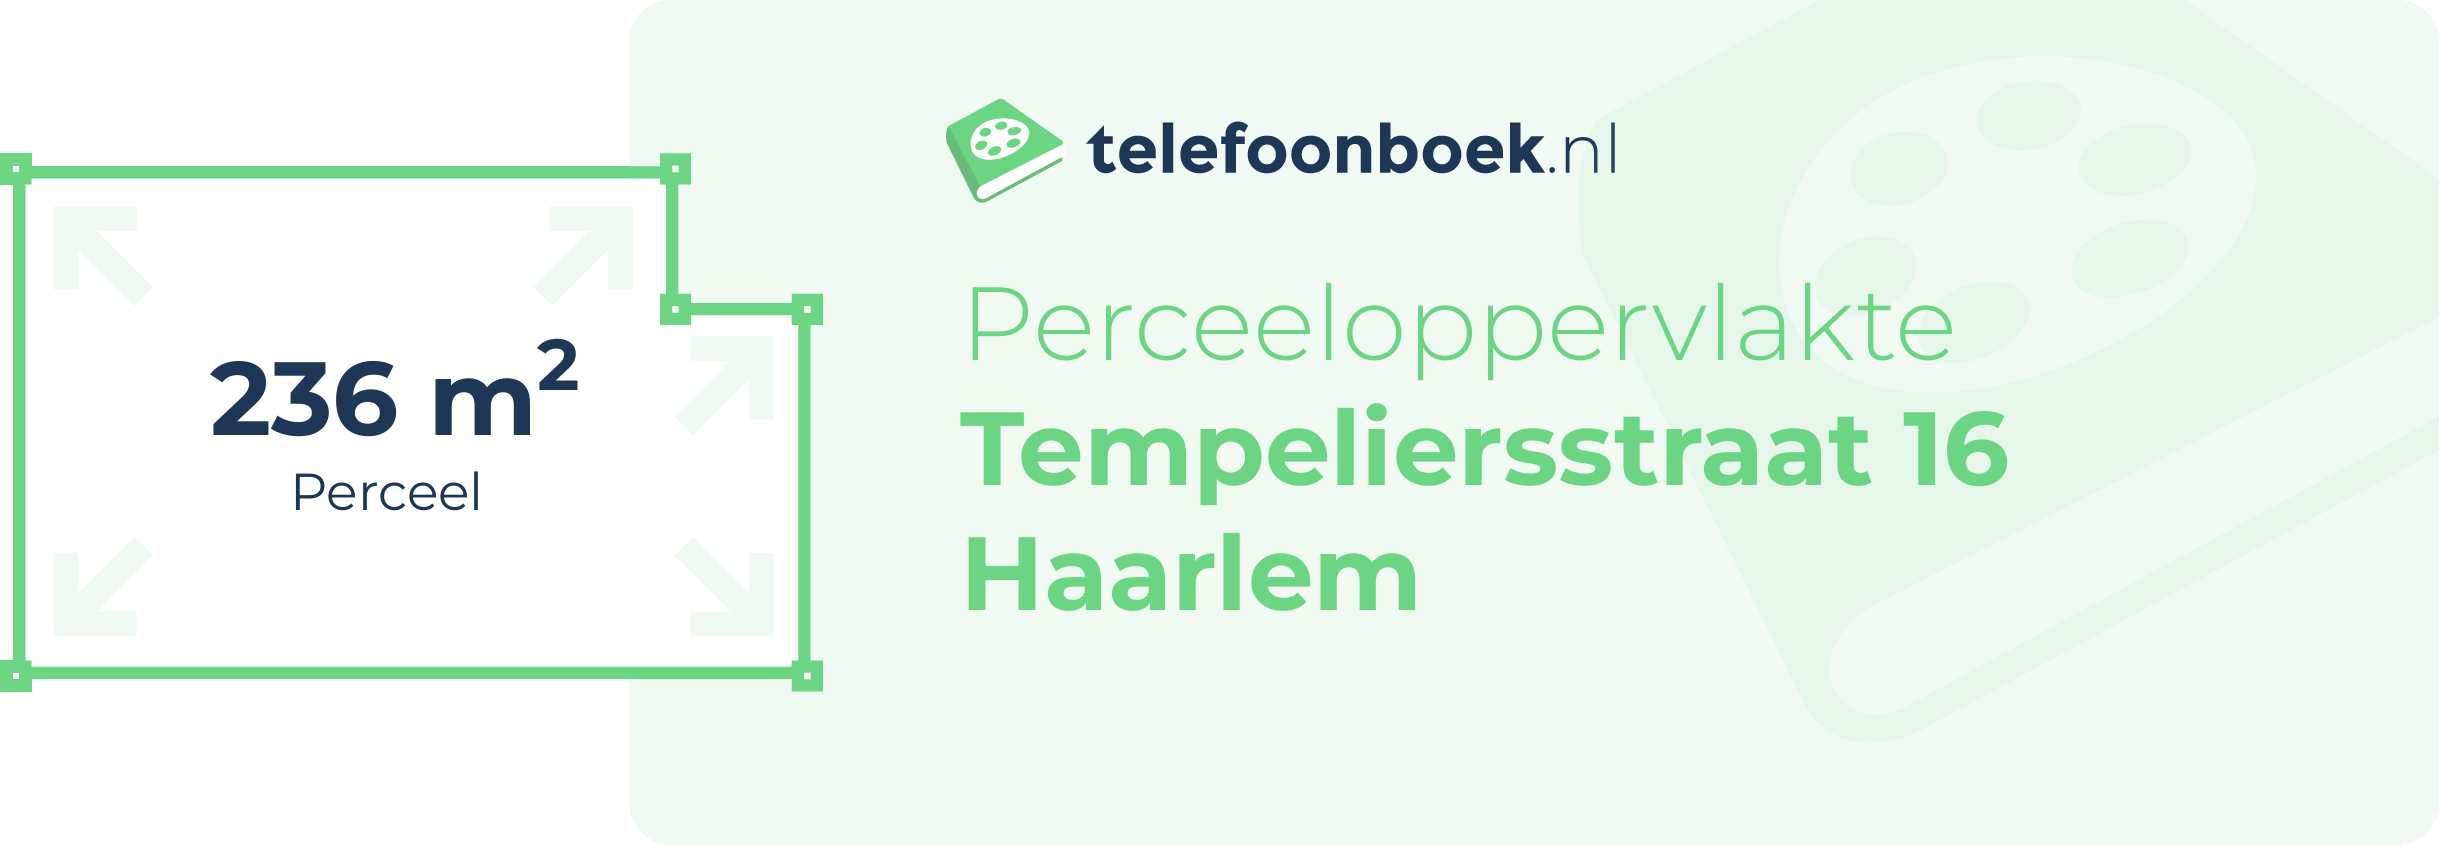 Perceeloppervlakte Tempeliersstraat 16 Haarlem